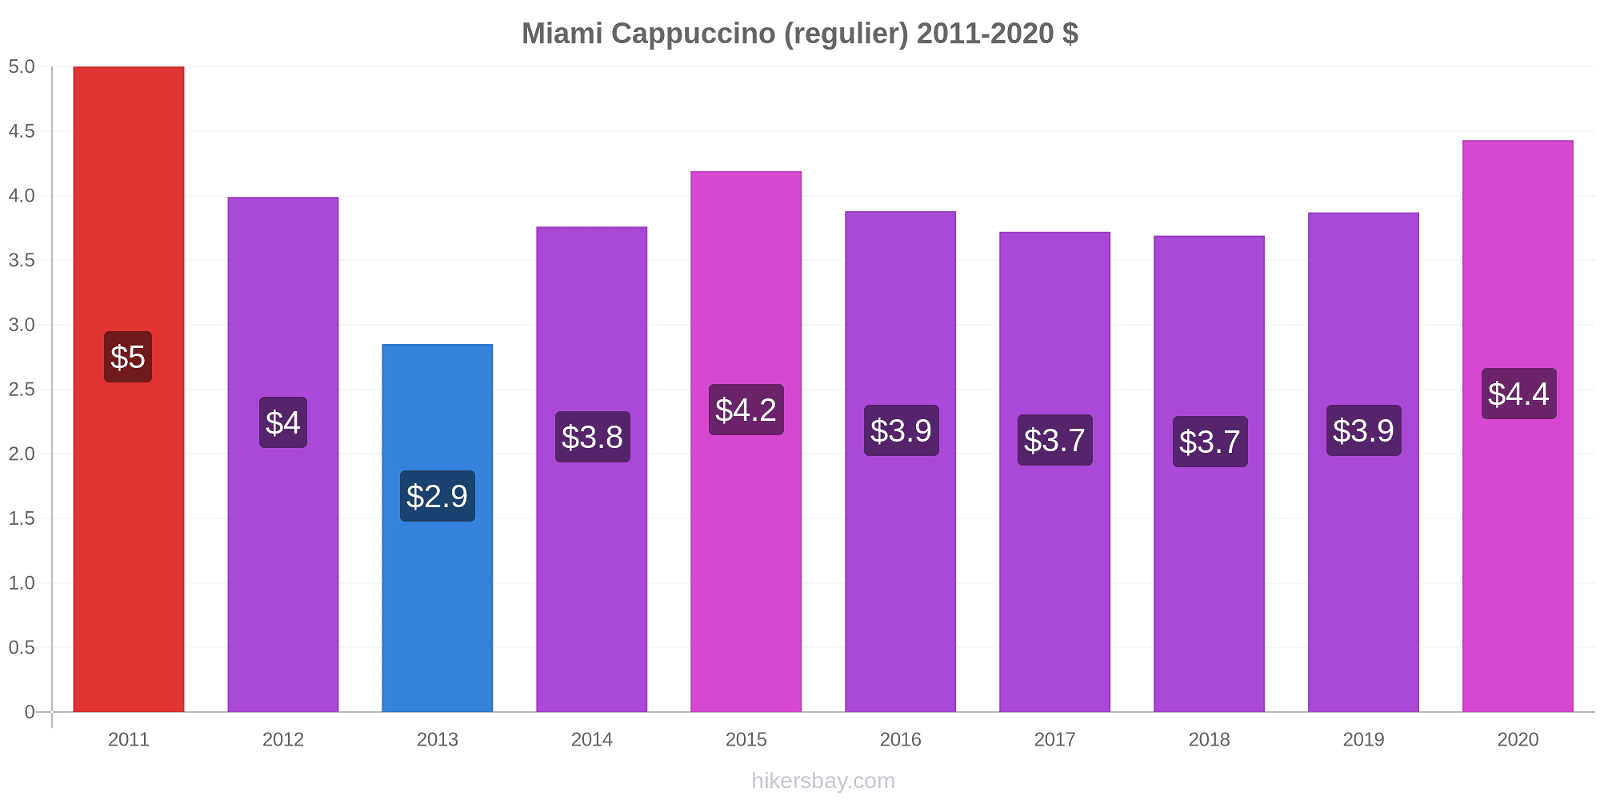 Miami prijswijzigingen Cappuccino (regelmatige) hikersbay.com